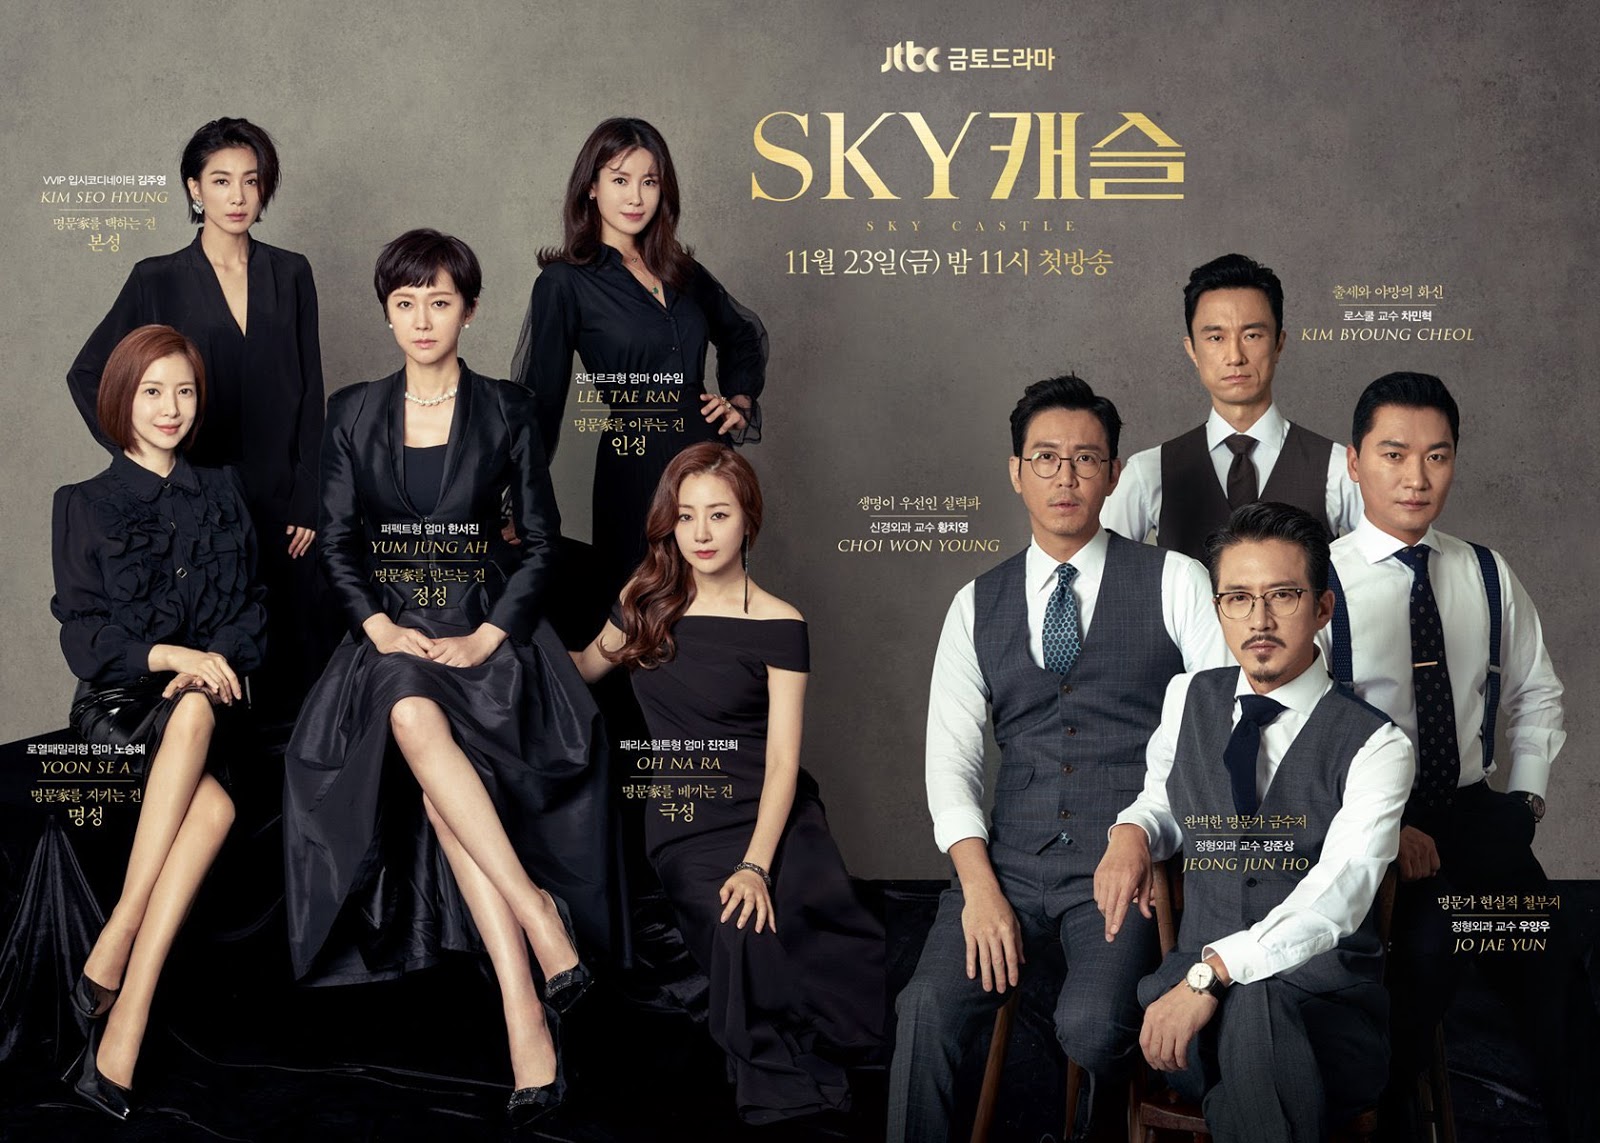 Drama Korea "SKY Castle" Terus Mengesankan dan Meraih Rating Terbaik